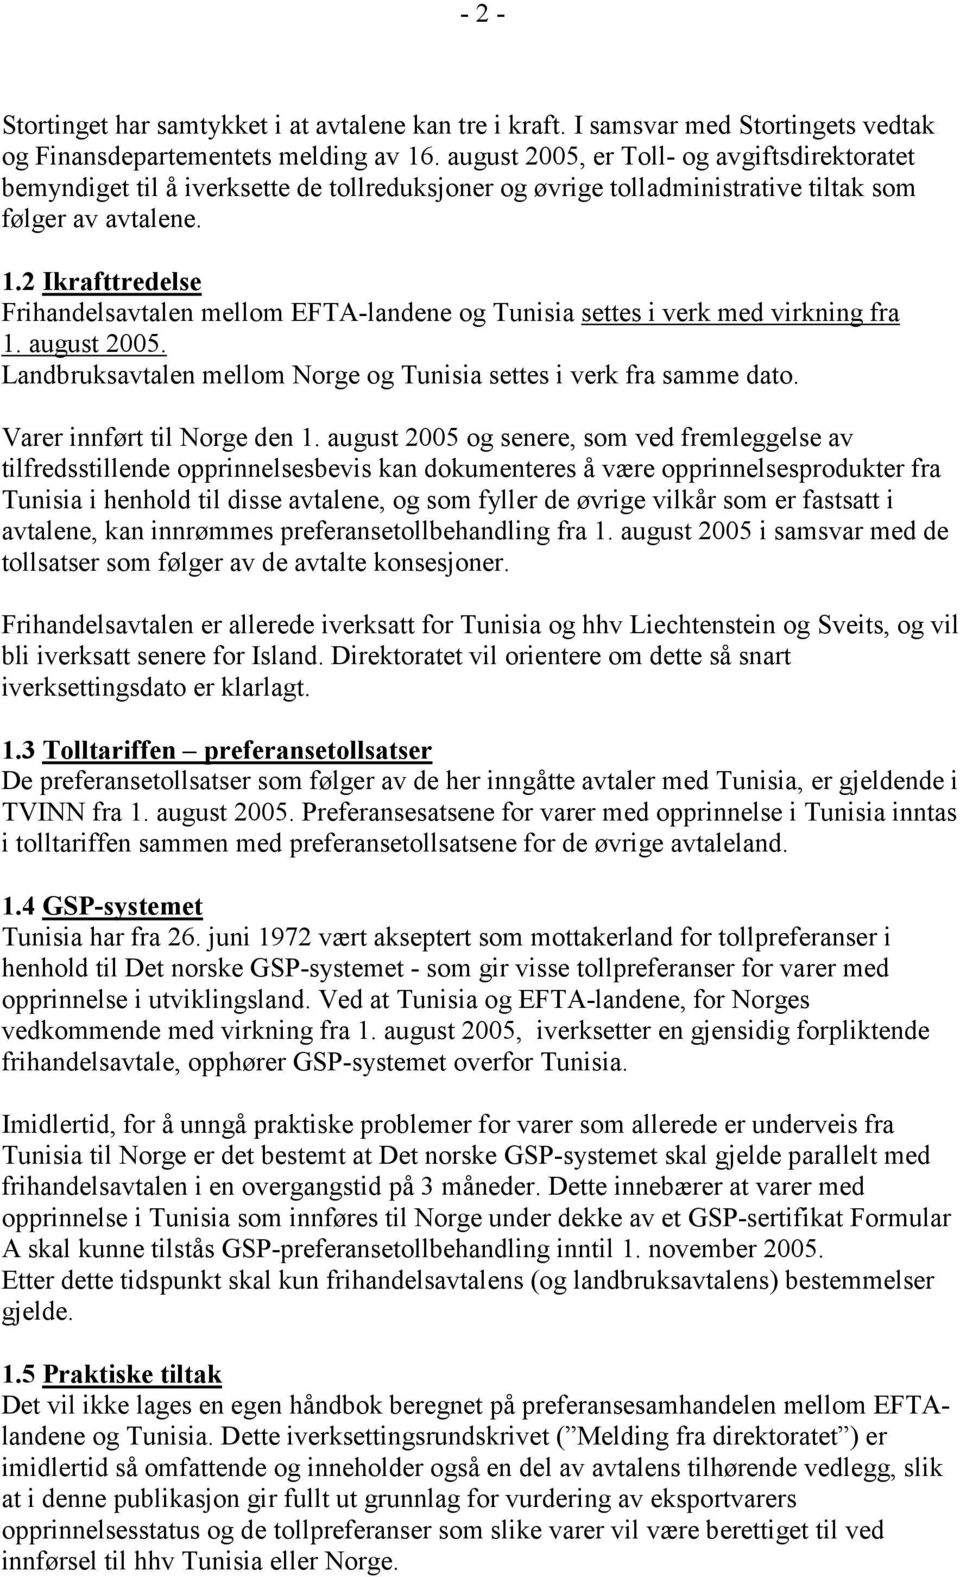 2 Ikrafttredelse Frihandelsavtalen mellom EFTA-landene og Tunisia settes i verk med virkning fra 1. august 2005. Landbruksavtalen mellom Norge og Tunisia settes i verk fra samme dato.